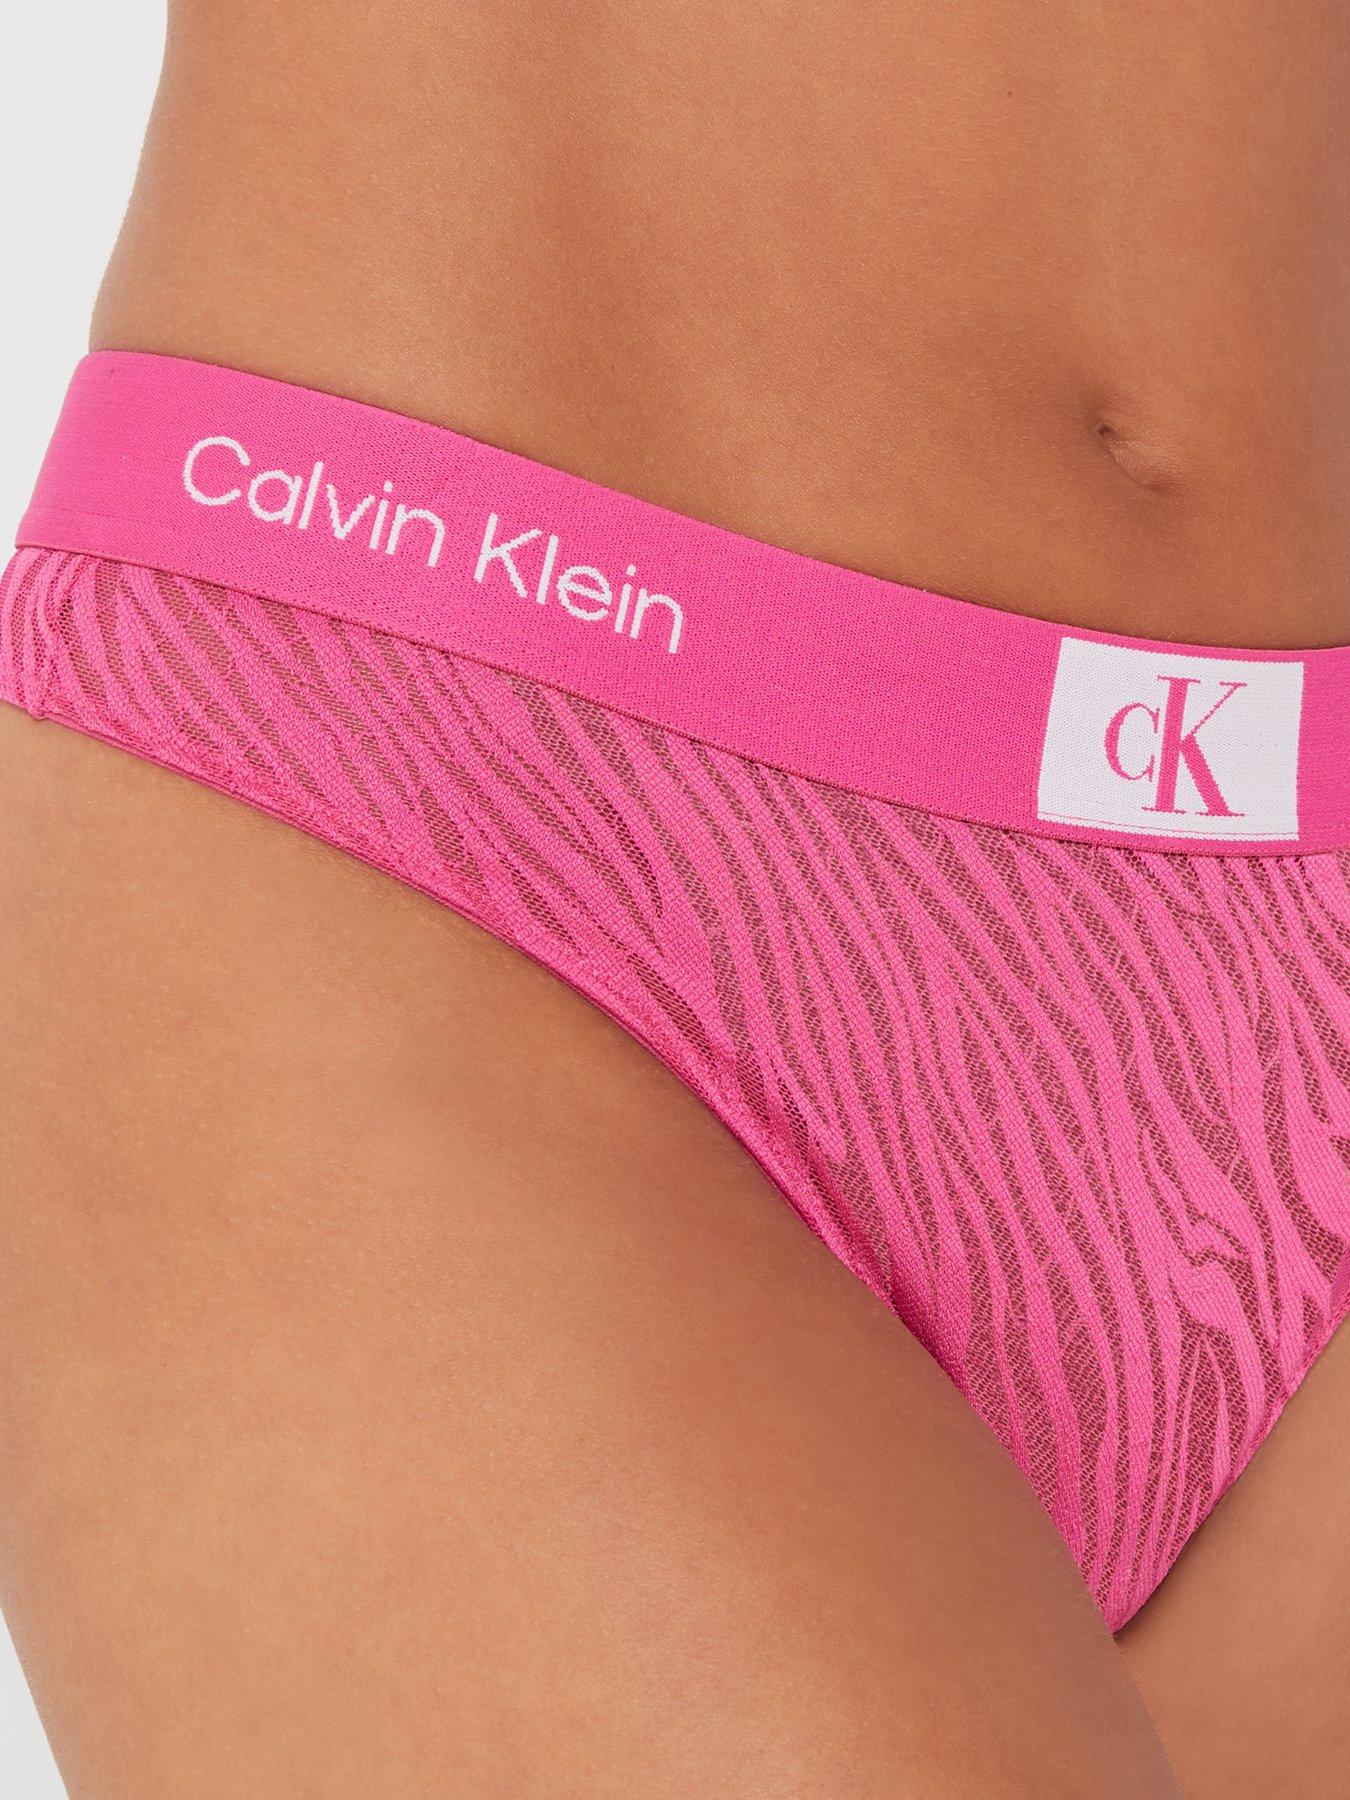 Calvin Klein 1996 Animal Lace Thong - Pink